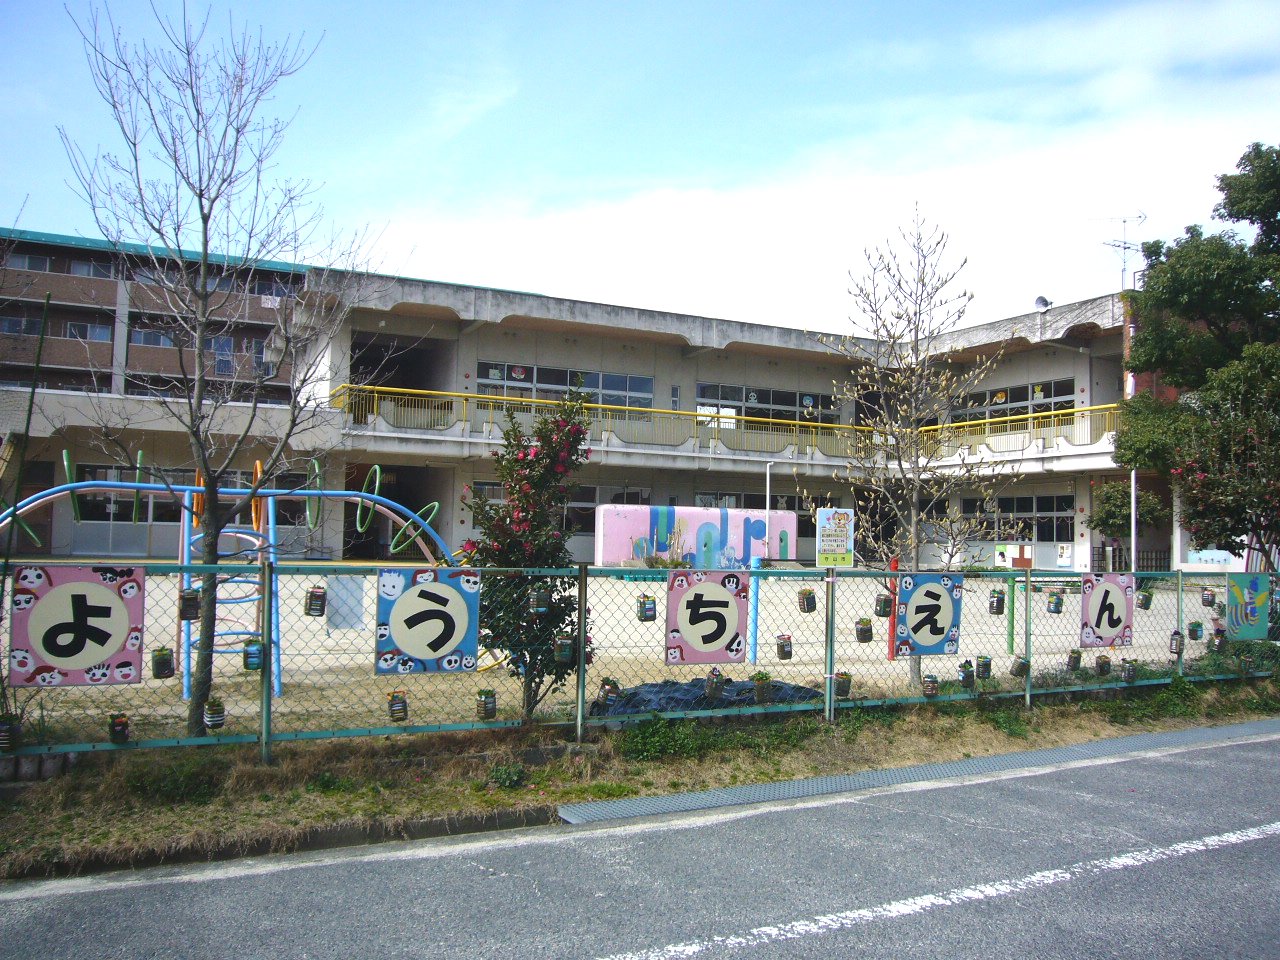 kindergarten ・ Nursery. Yoshimi kindergarten (kindergarten ・ 370m to the nursery)